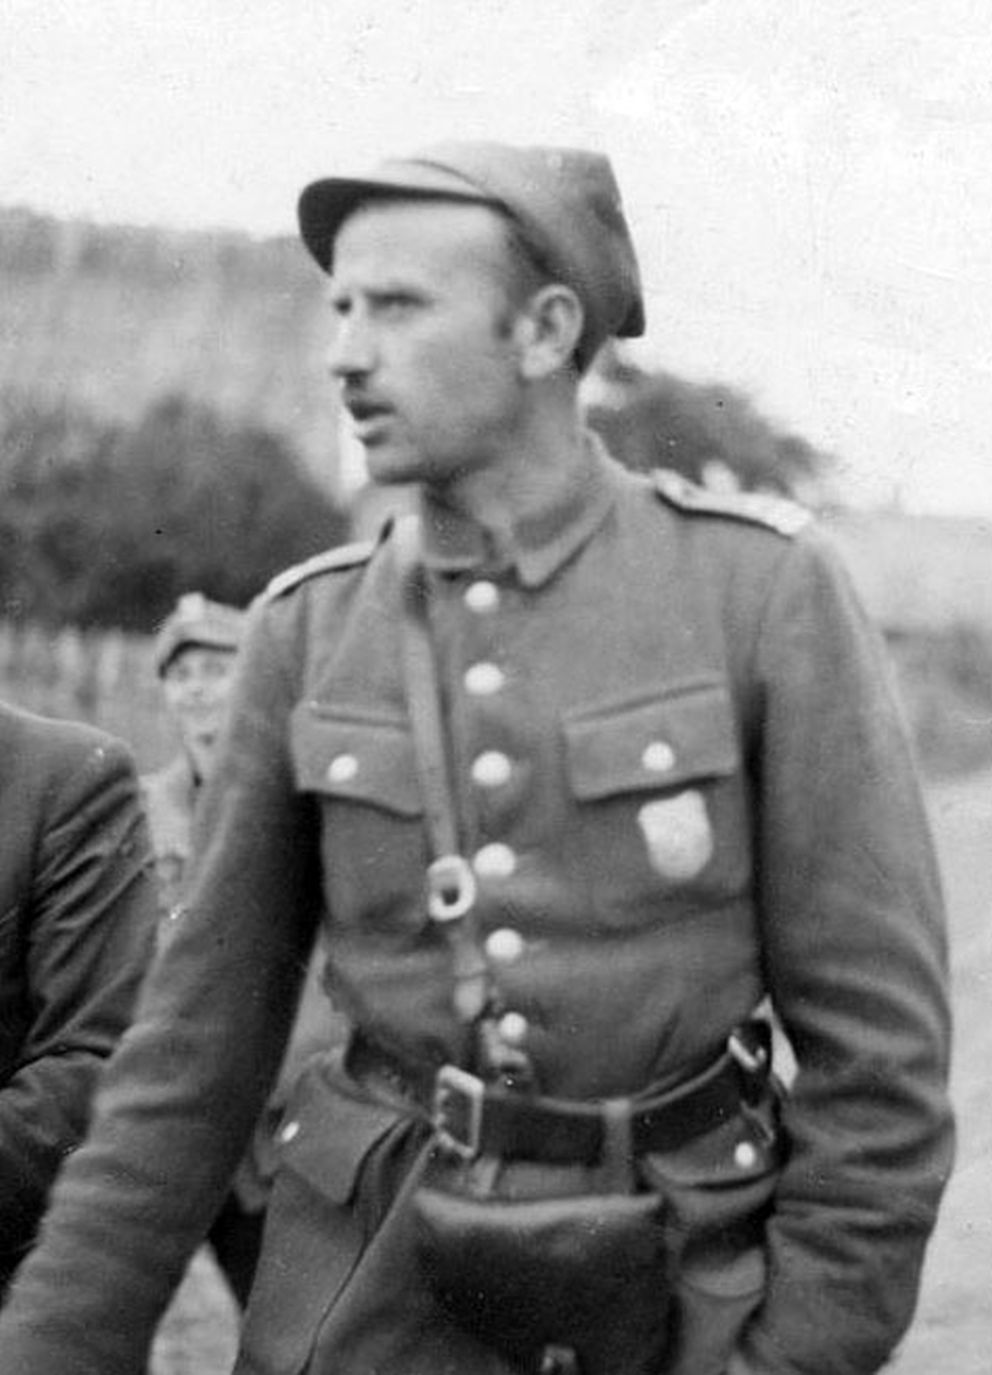 mjr-zygmunt-szendzielarz-upaszka-i-5-brygada-wile-ska-ak-w-1945